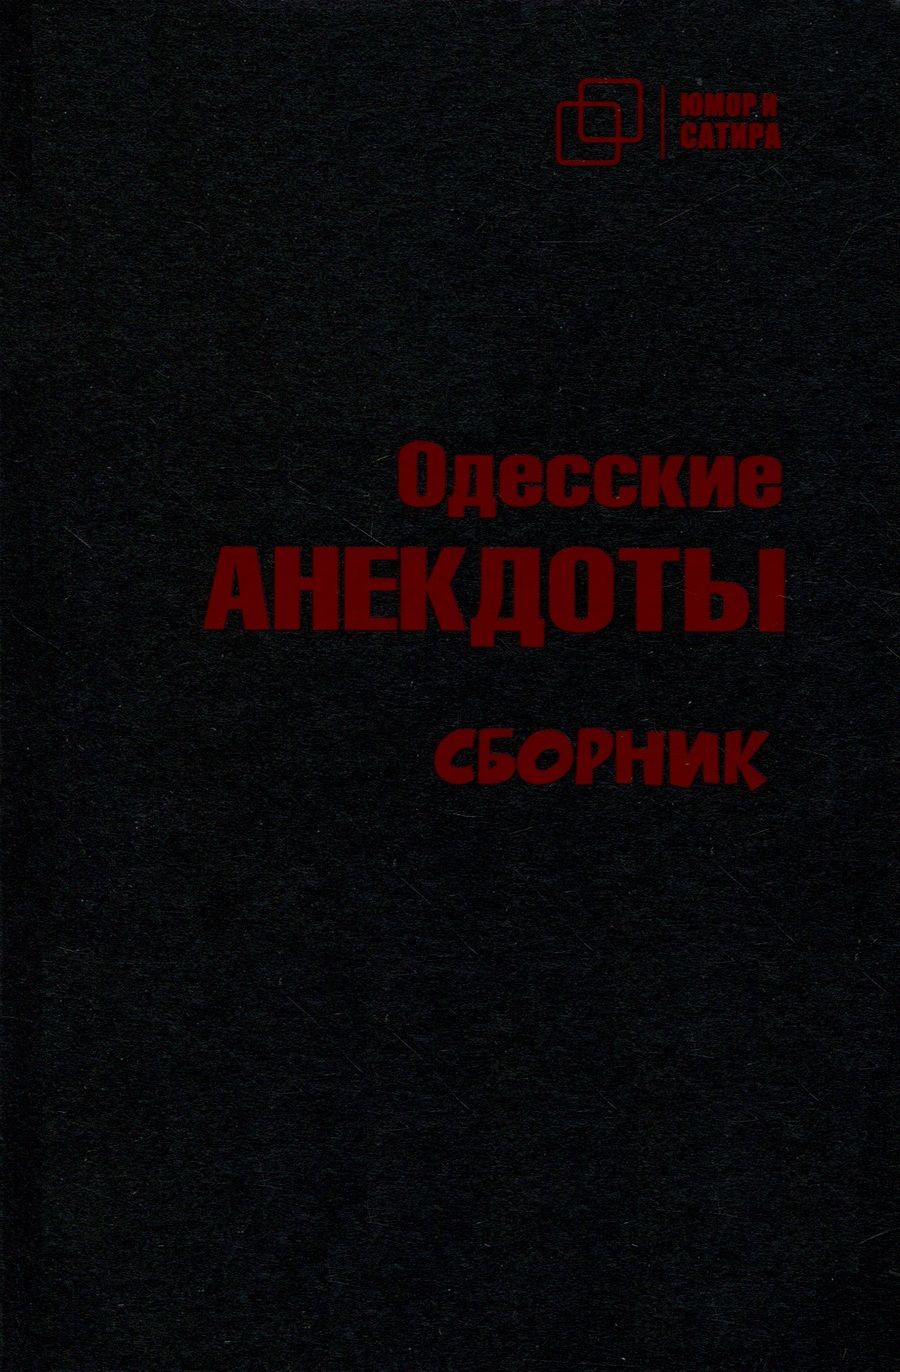 Обложка книги "Одесские анекдоты"